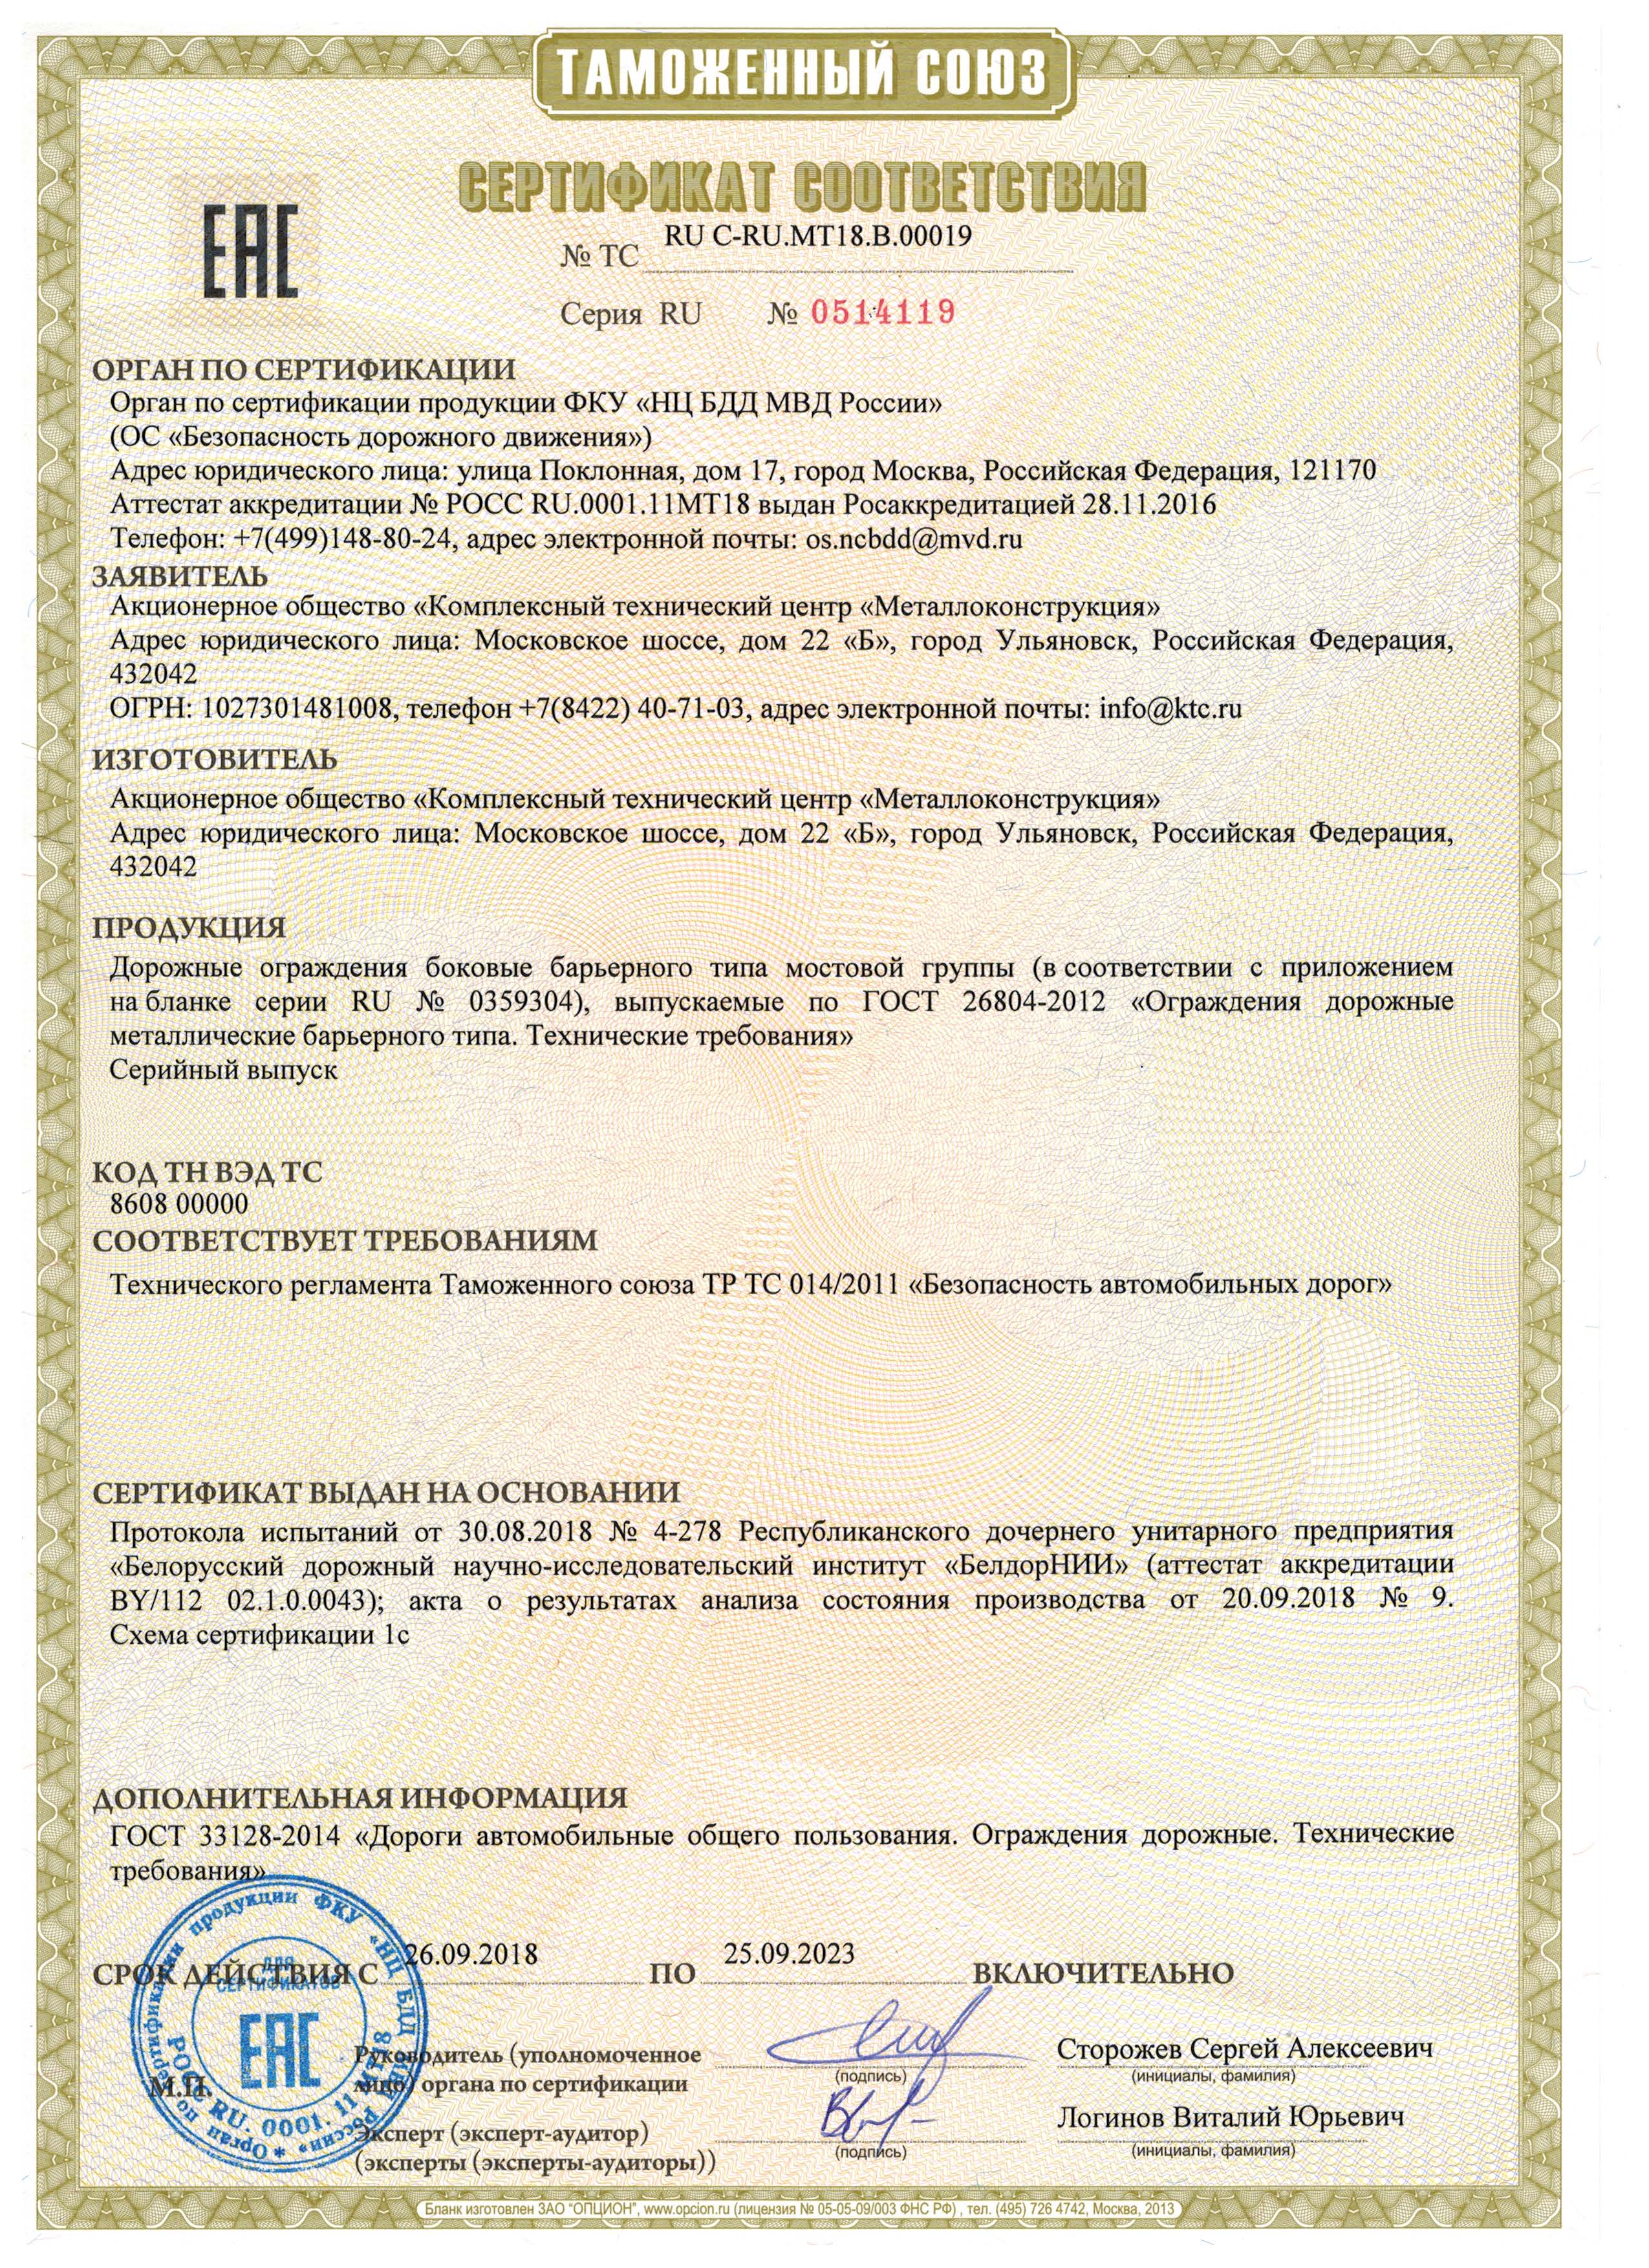 Сертификат на соответствие ГОСТ 26804 по ТР ТС на МО